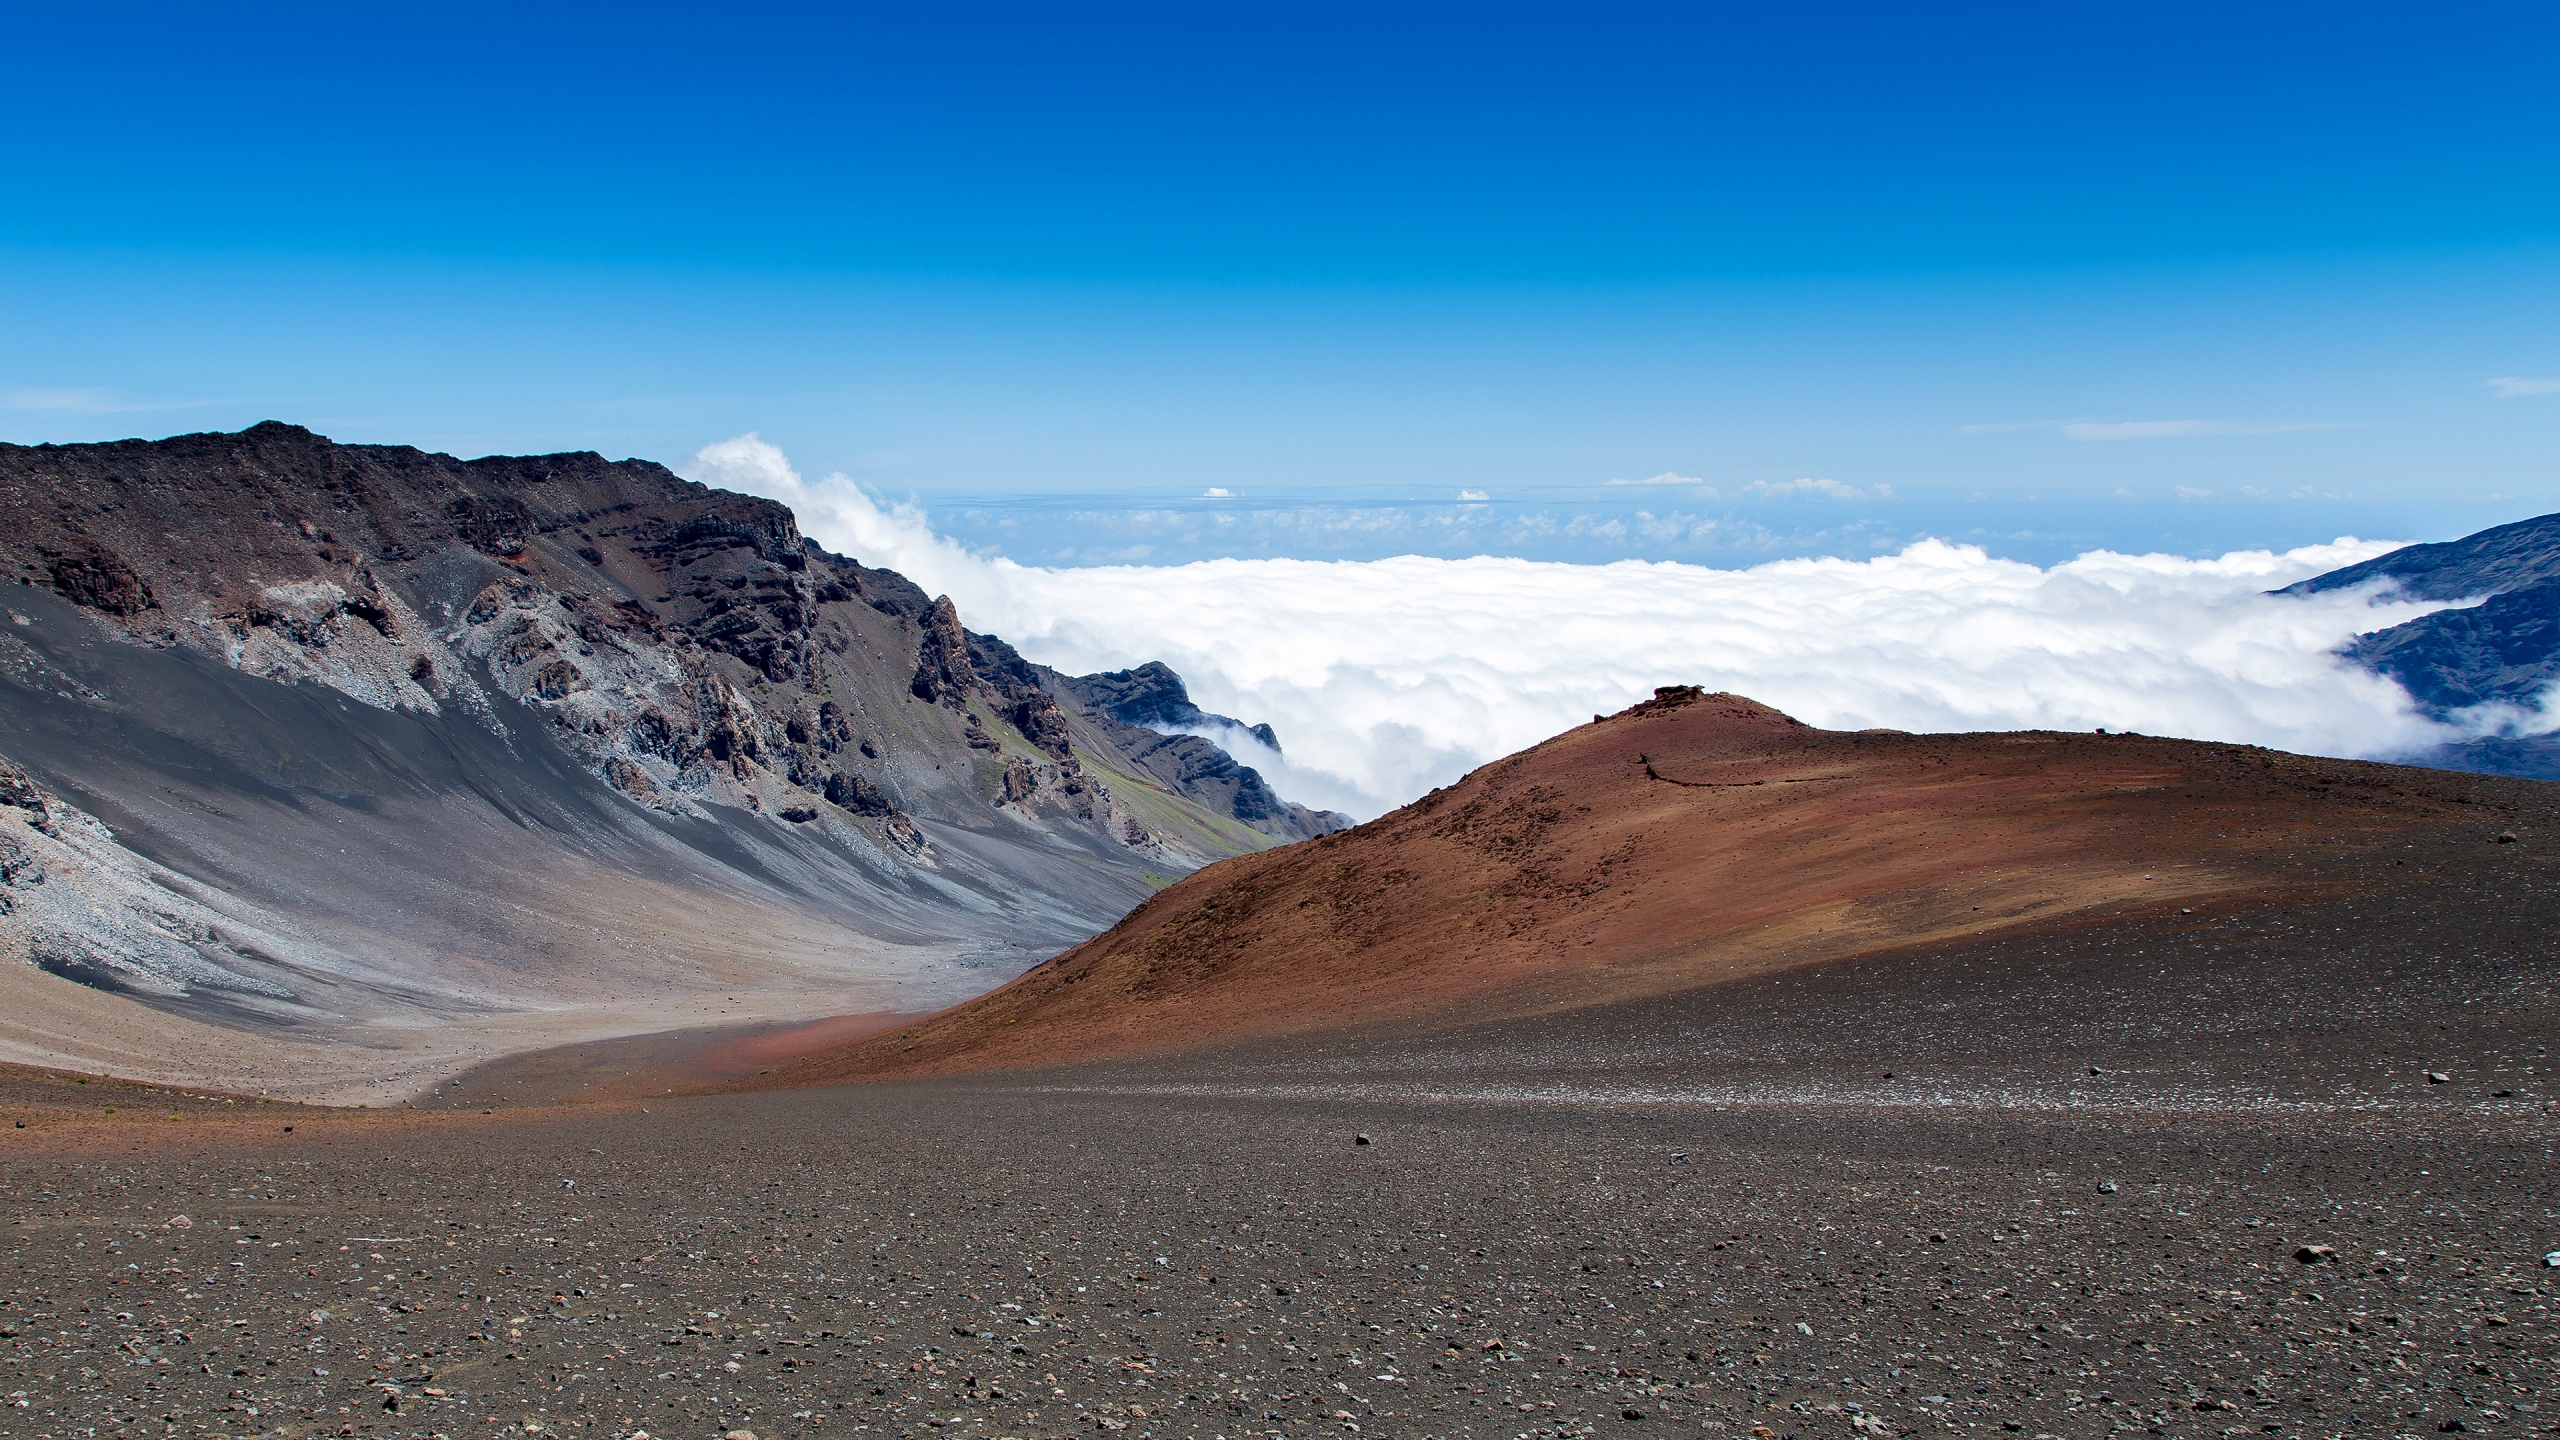 Haleakala View for 2560x1440 HDTV resolution